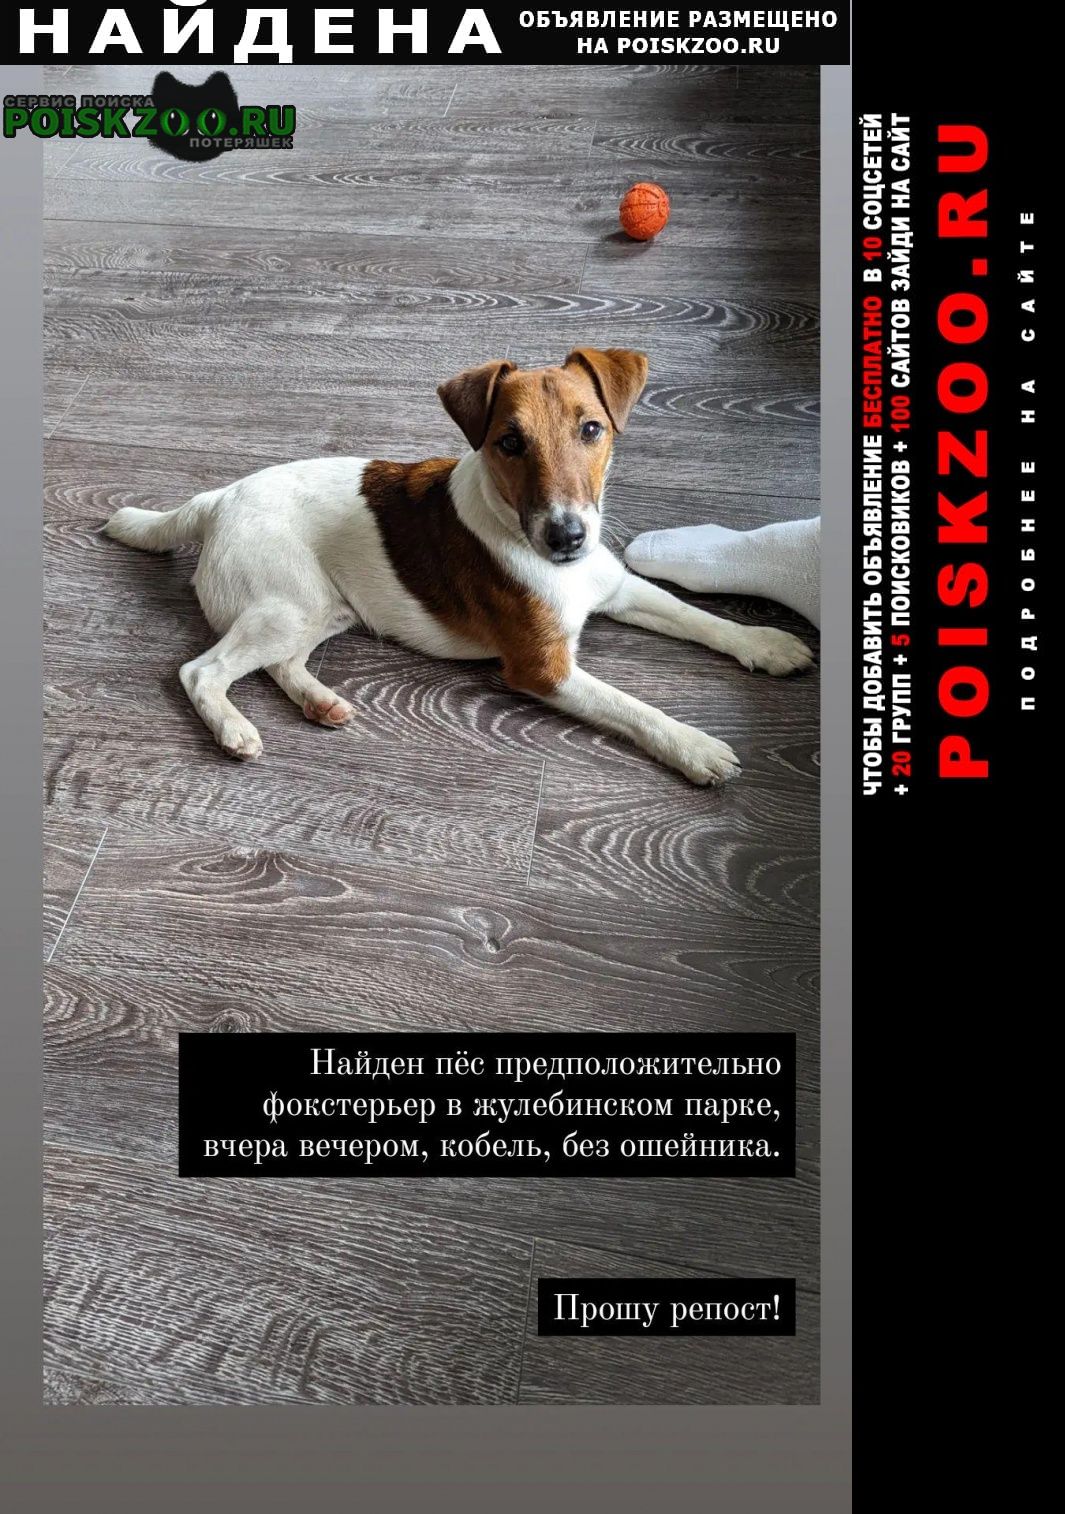 Найдена собака кобель пёс в жулебинском парке Люберцы